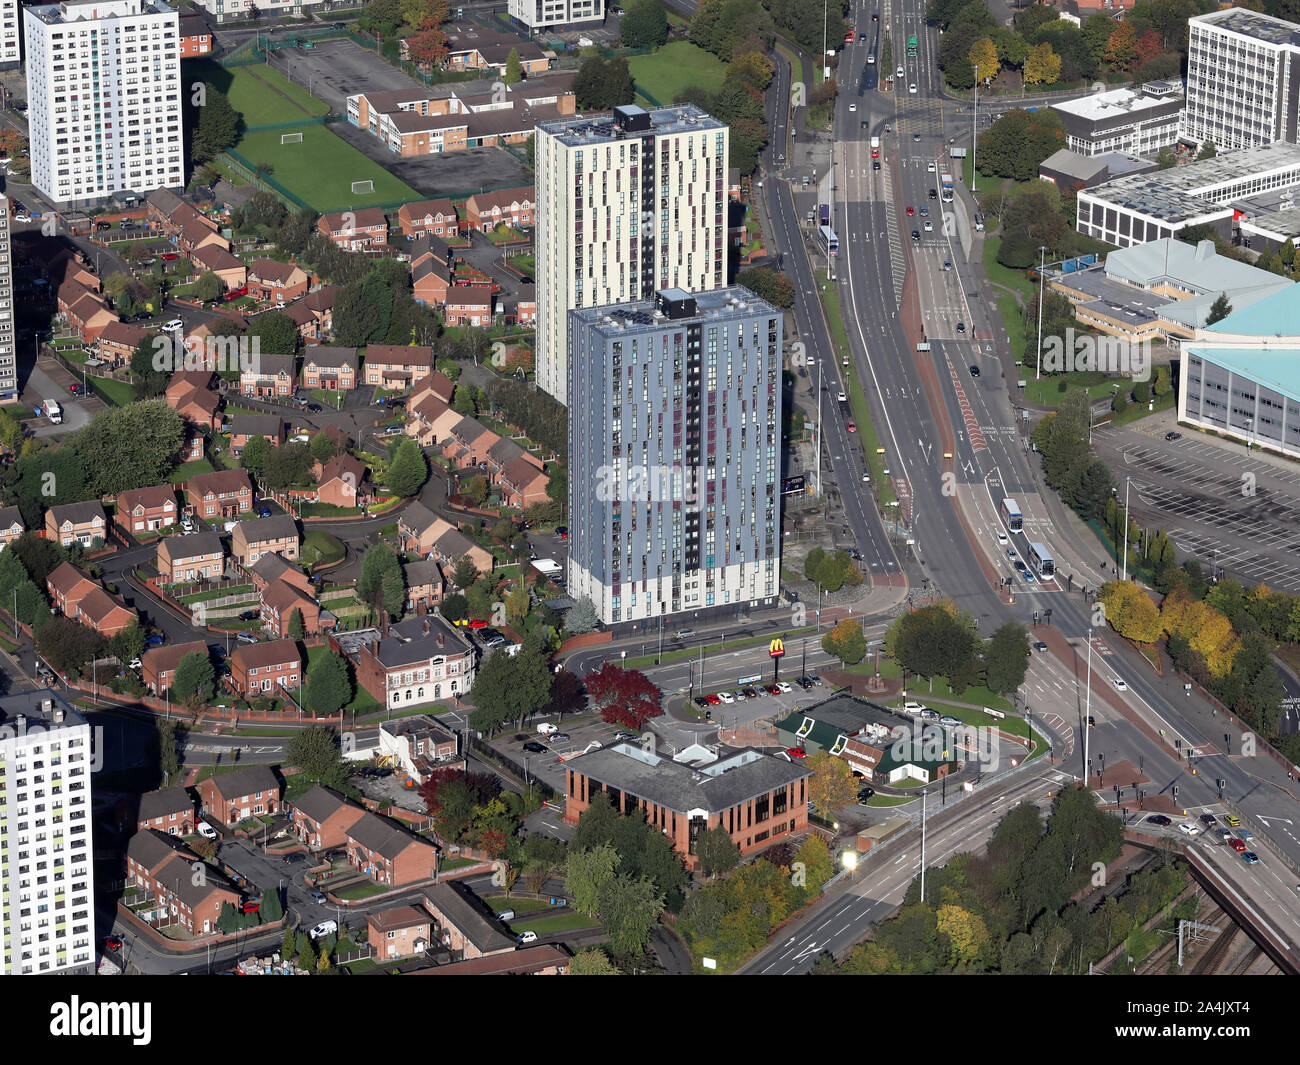 Vista aérea de casas y bloques de pisos y un restaurante McDonalds, Salford, Manchester, Reino Unido Foto de stock